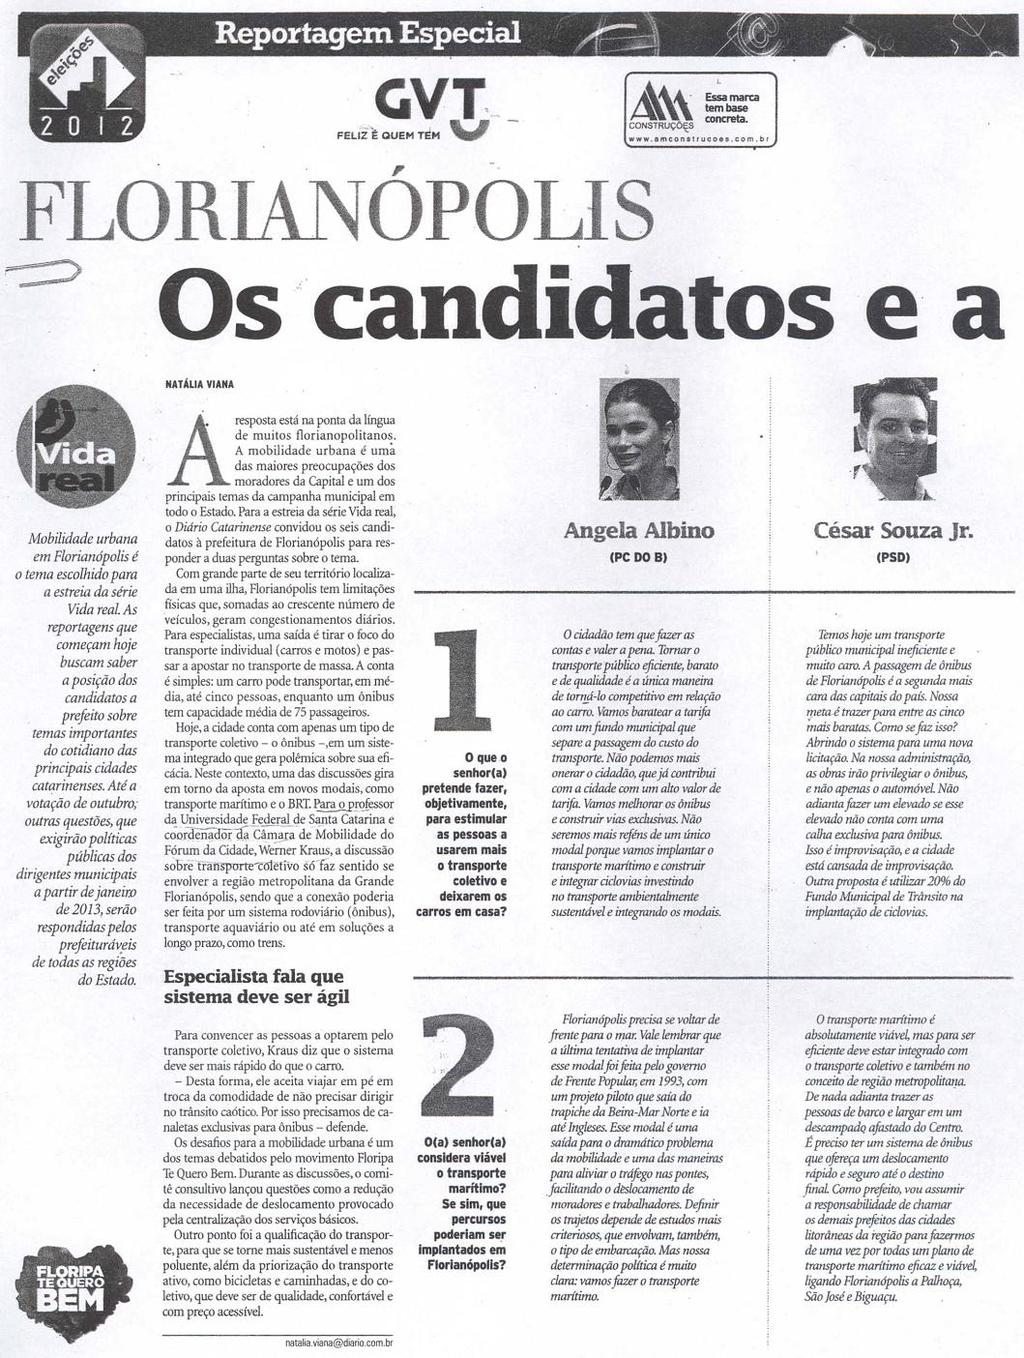 Diário Catarinense Reportagem Especial Florianópolis: Os candidatos e a mobilidade urbana Florianópolis / Mobilidade urbana /